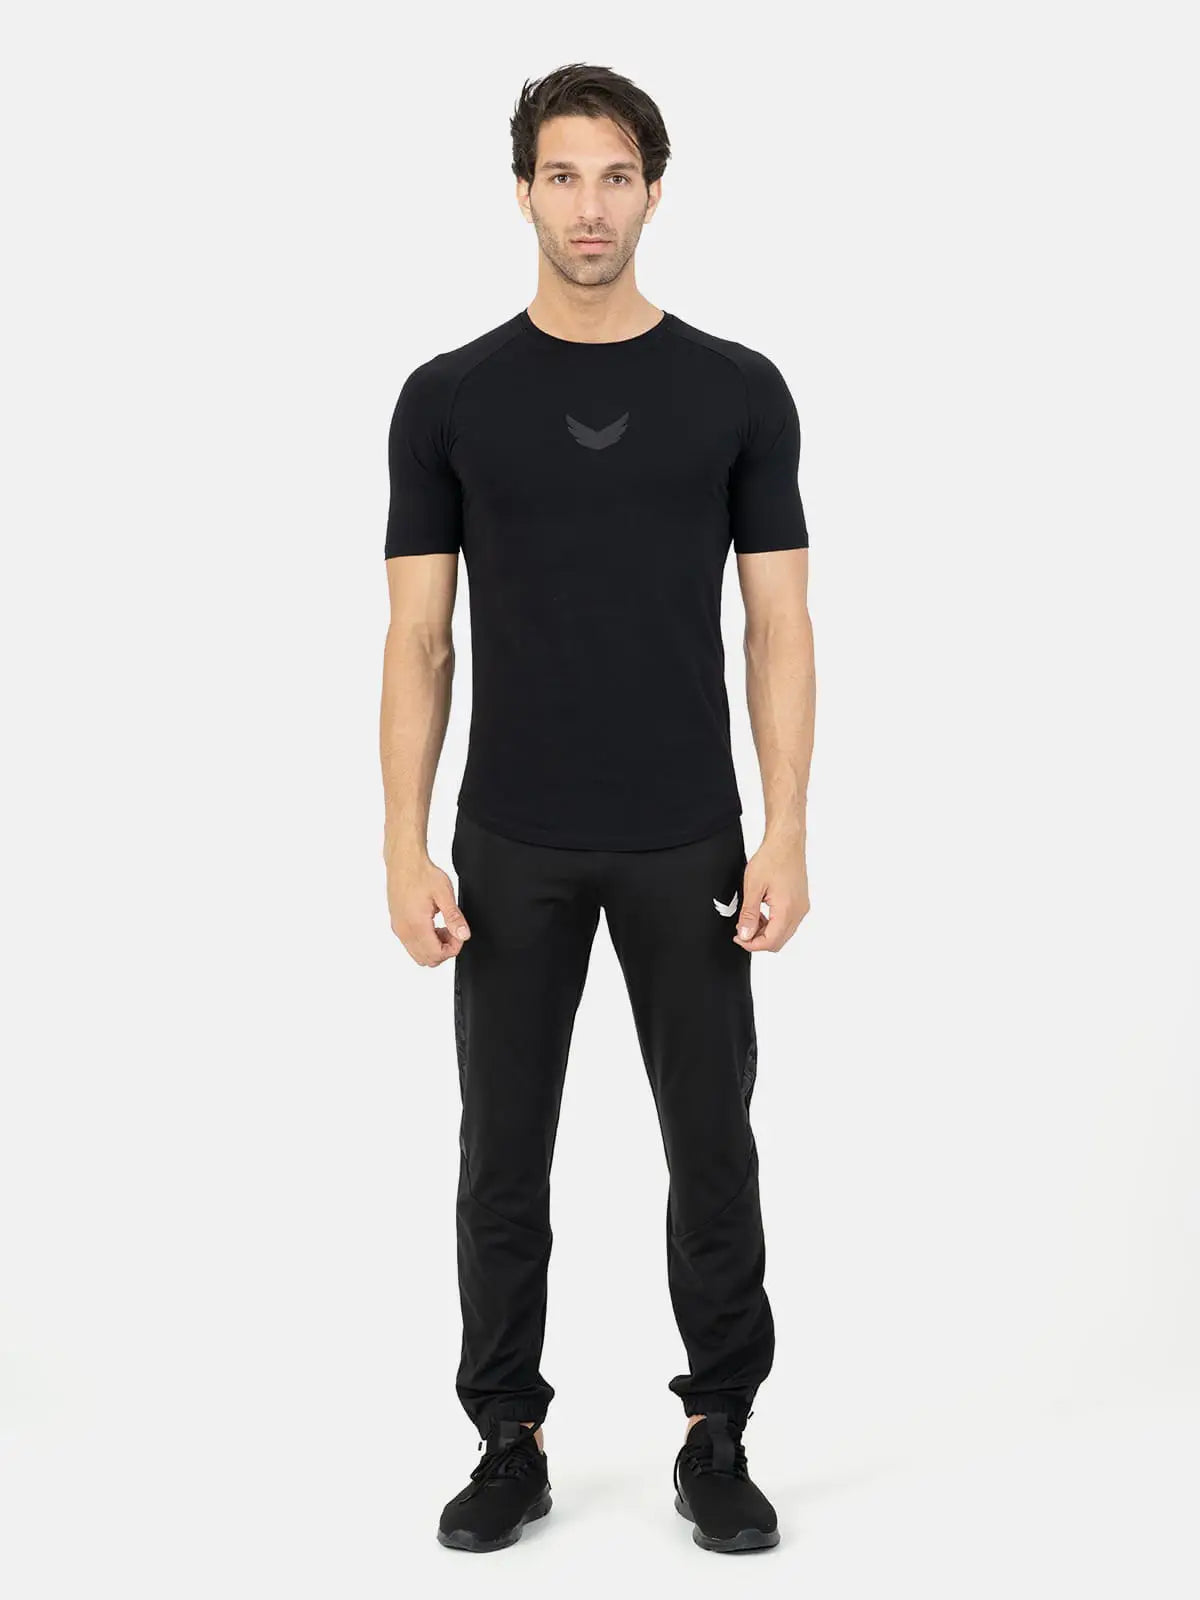 Curved Hem Basic Short Sleeve Training T-Shirt - black